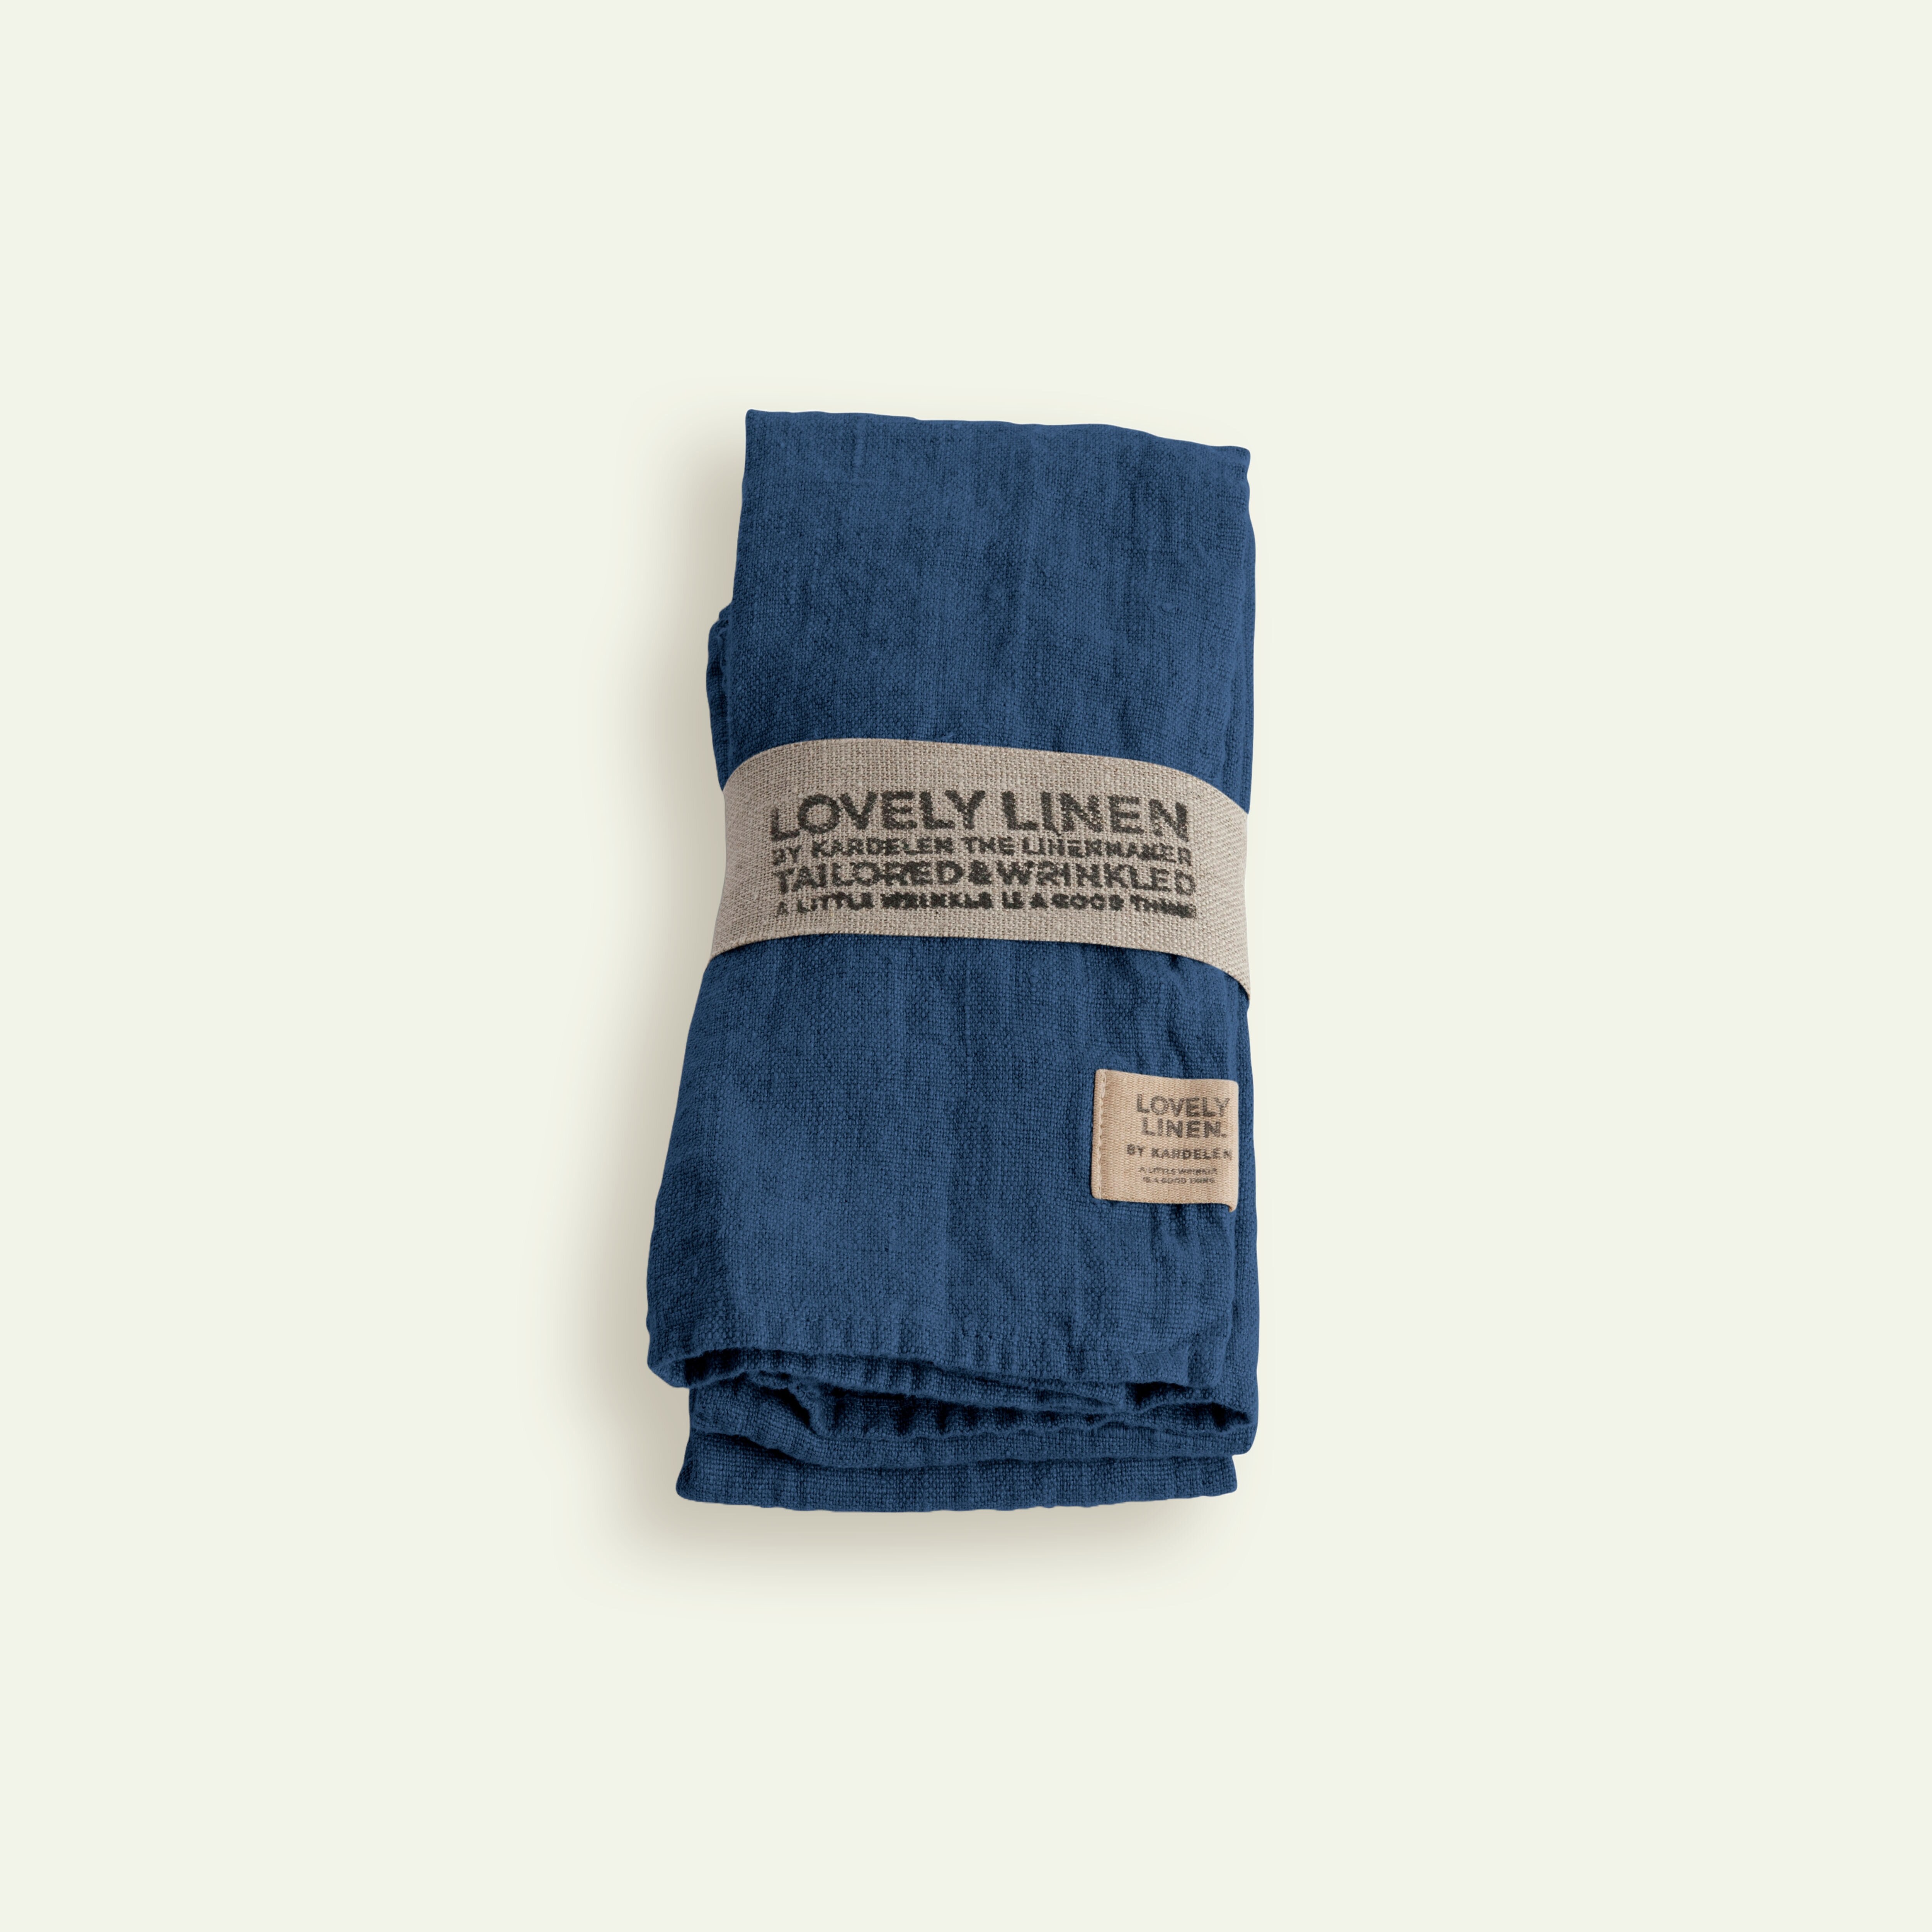 Lovely Linen Lovely servett 45 x 45 cm 4-pack, Denim Blue